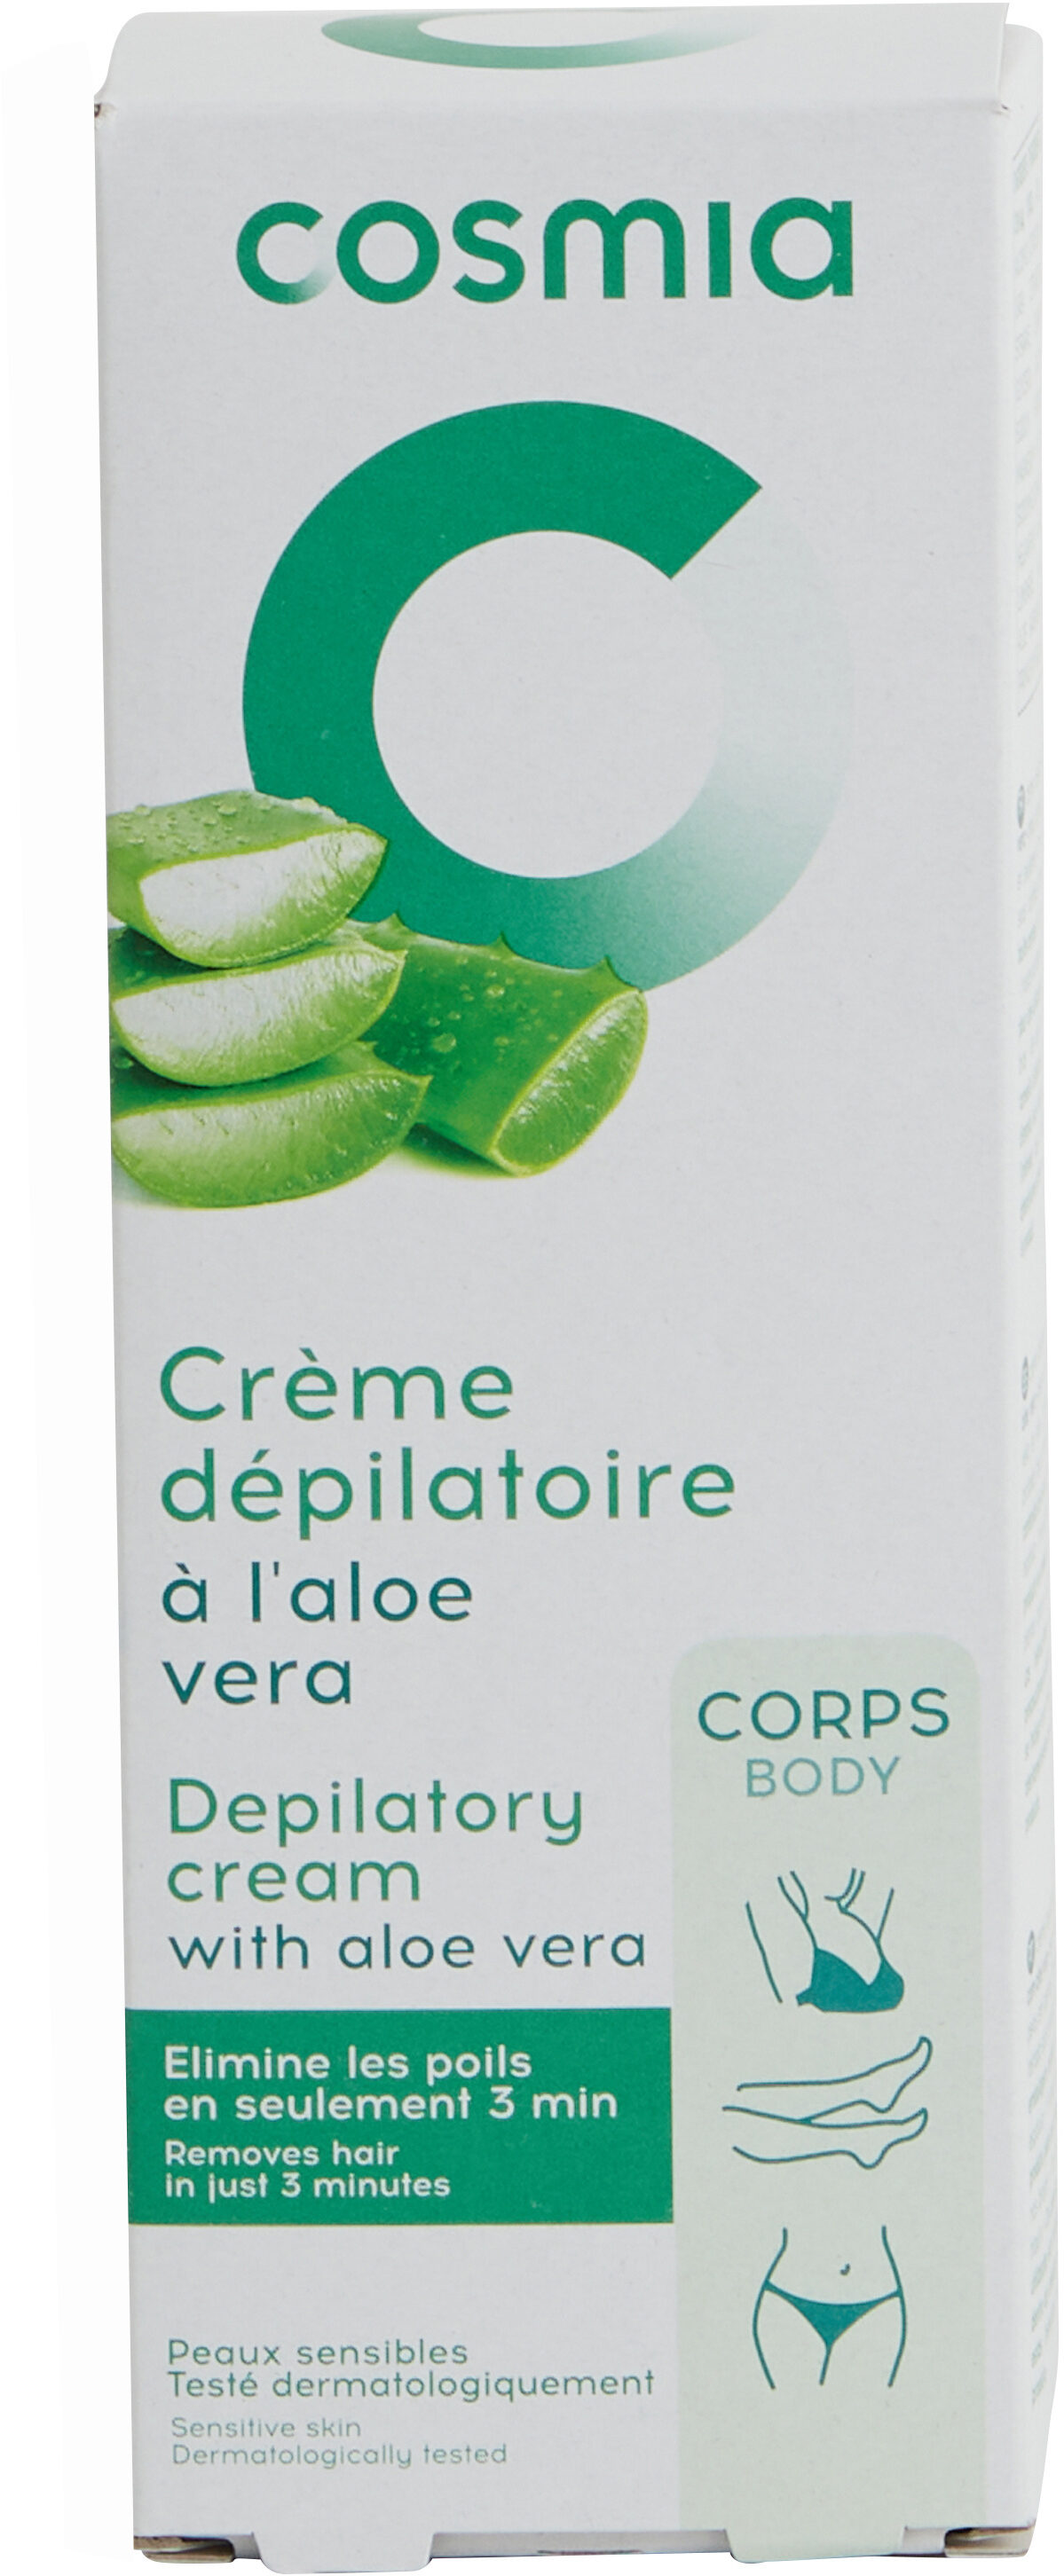 Crème dépilatoire à l'aloe vera - Product - fr